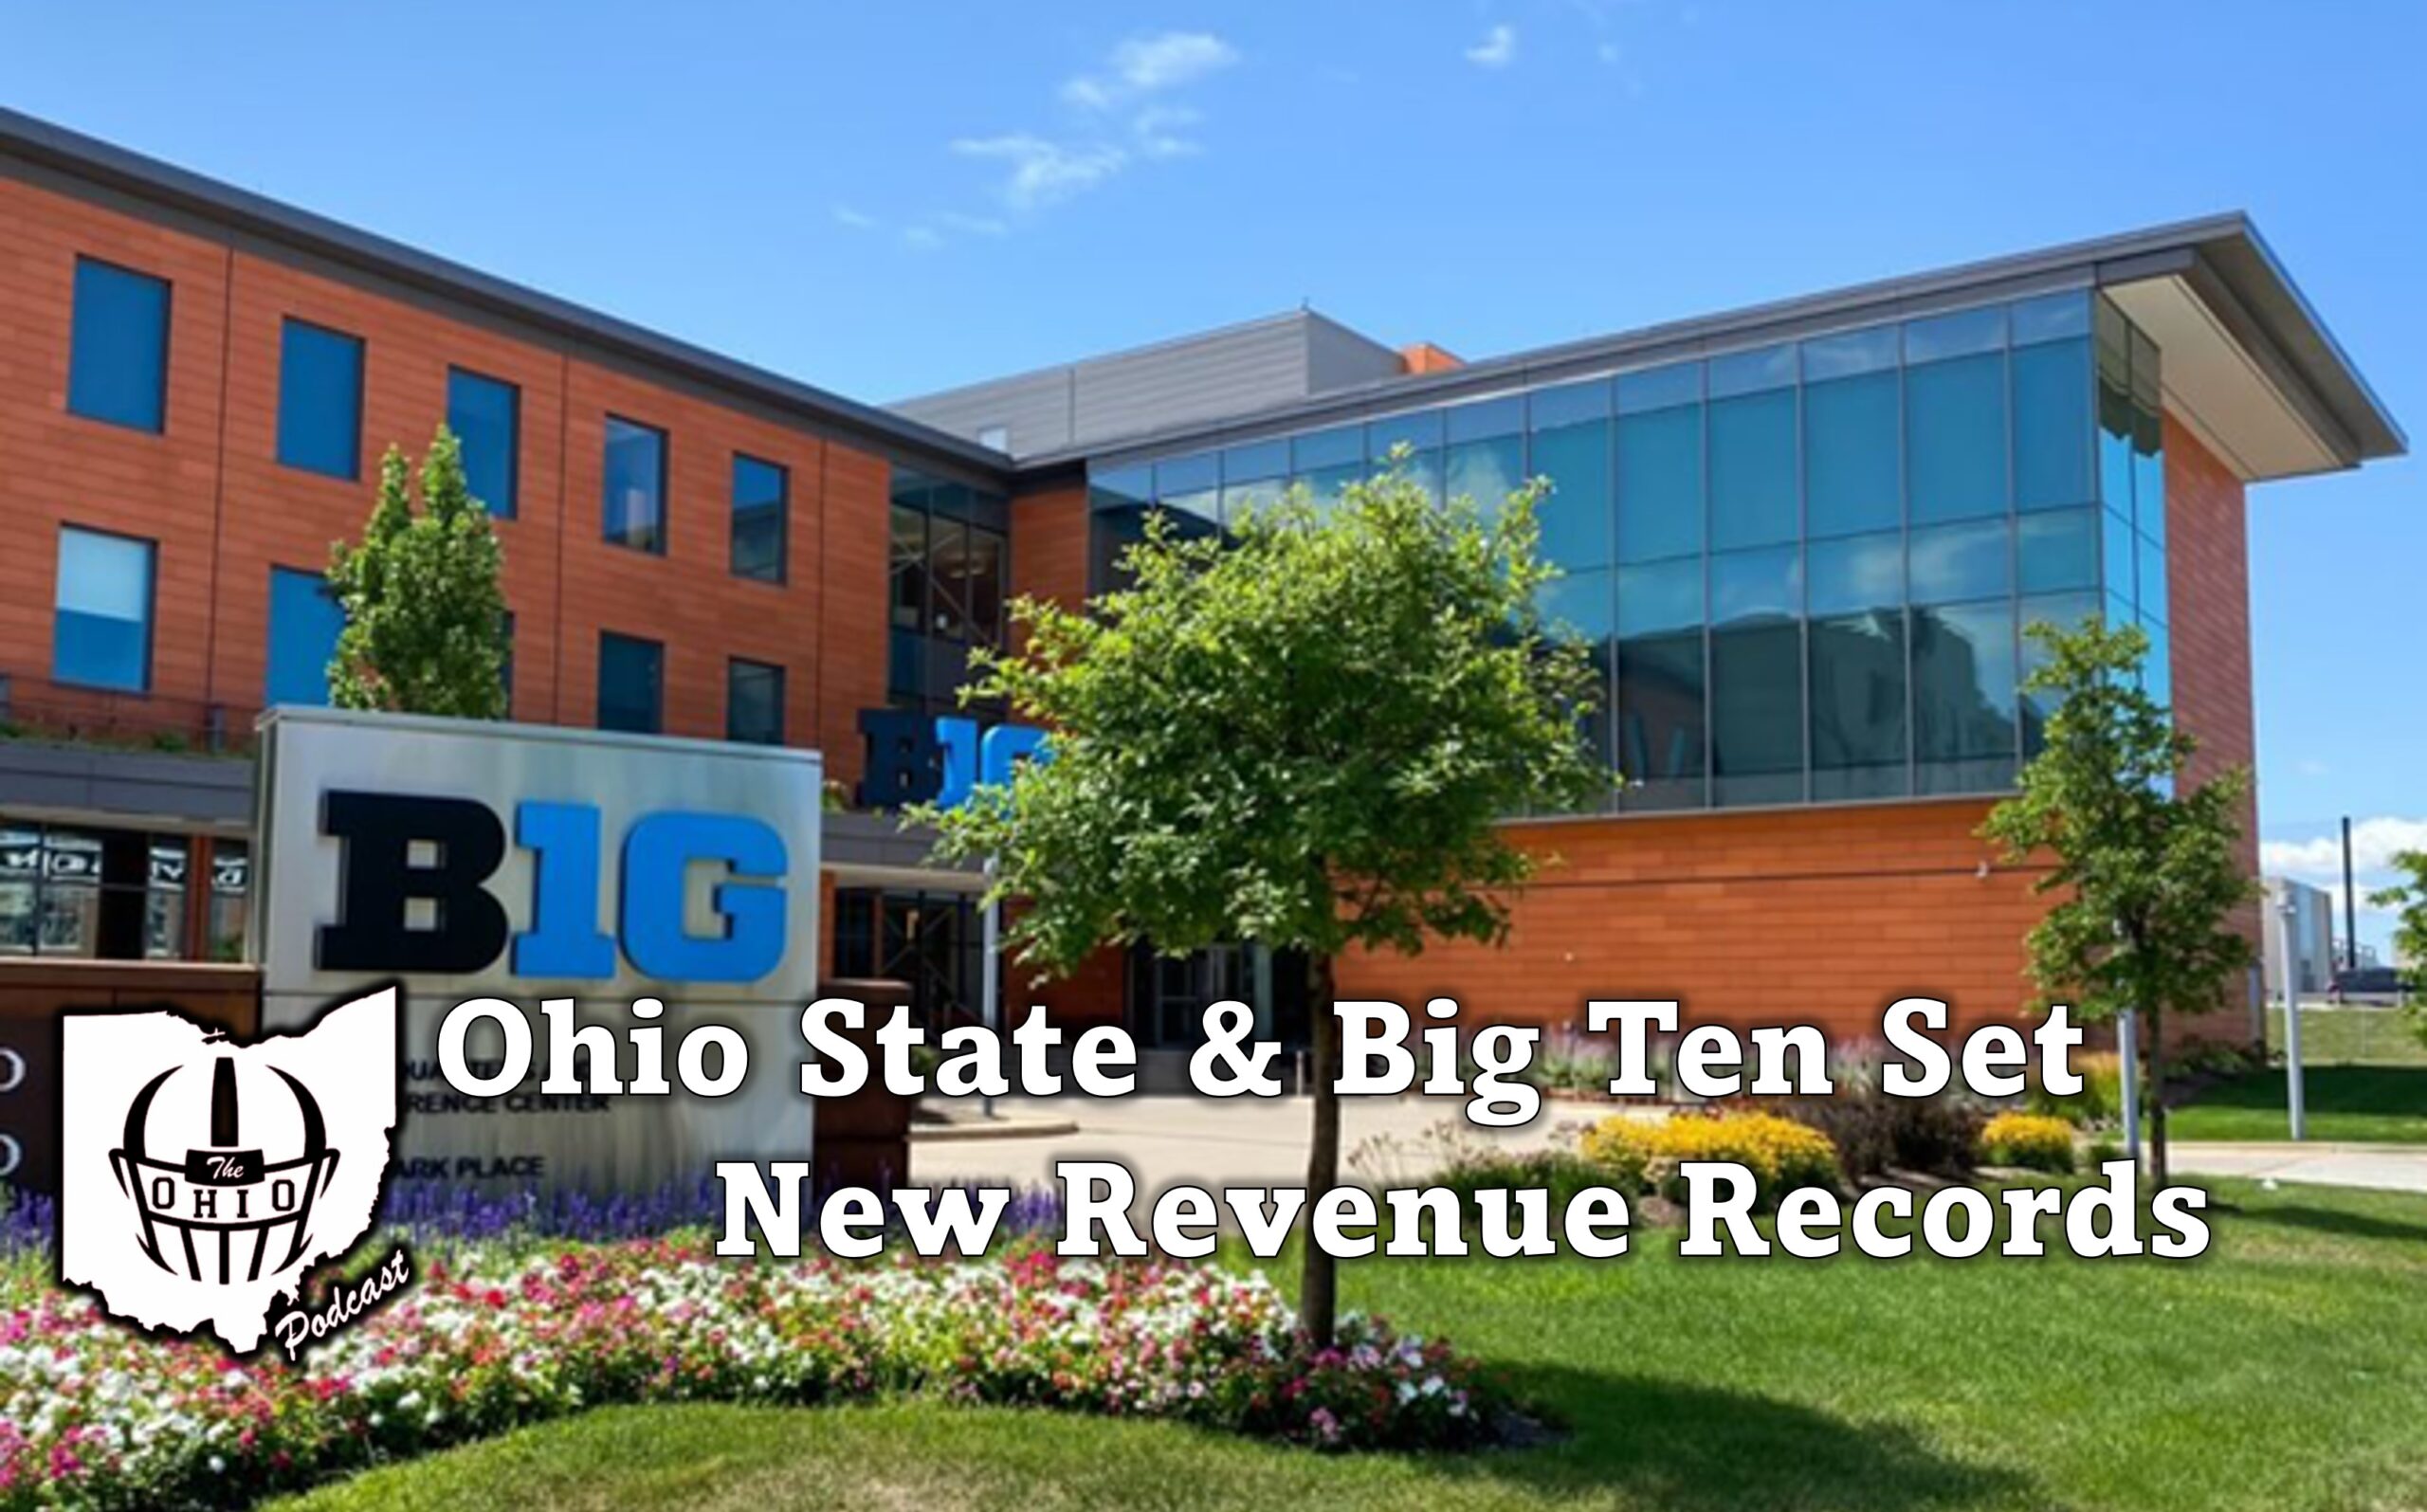 Ohio State and Big Ten Conference Achieve Record Revenue Milestones